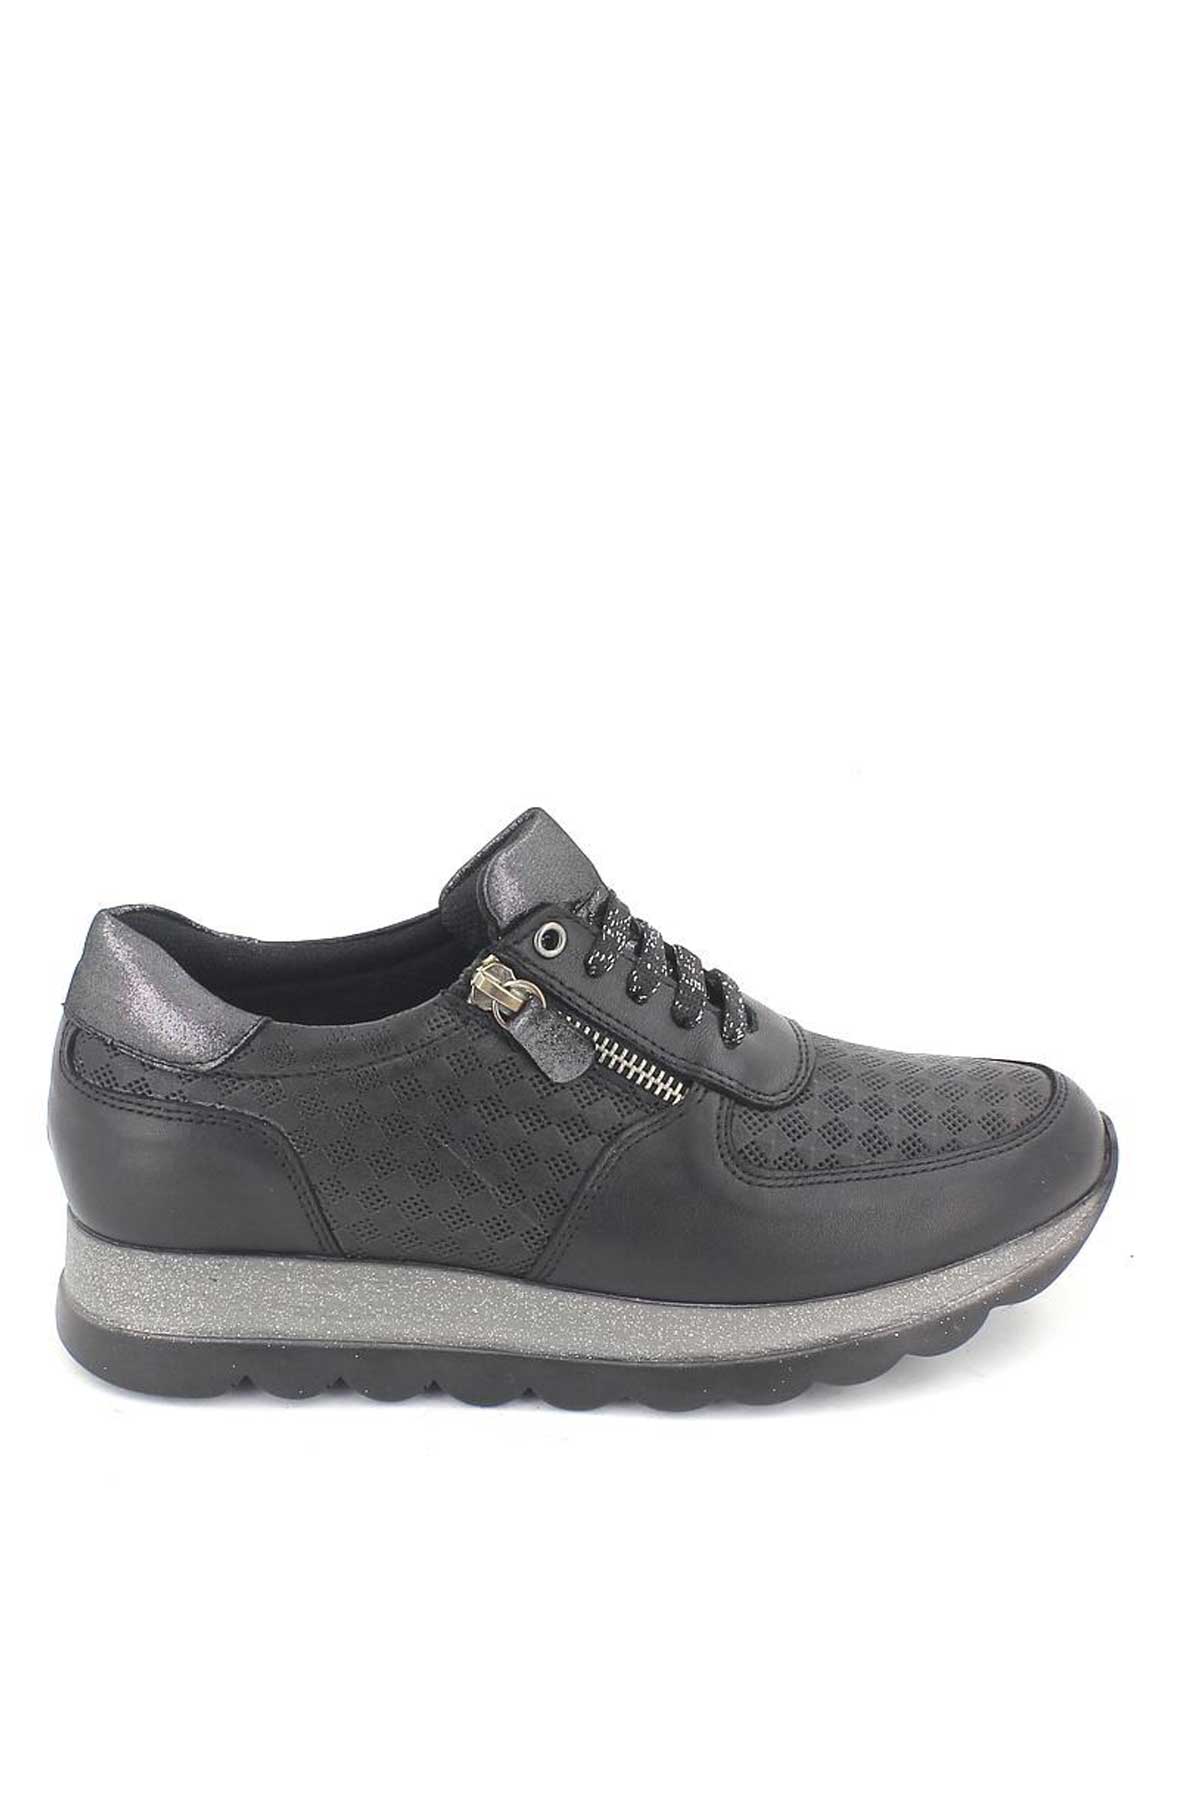 Kadın Deri Sneakers Ayakkabı Siyah 2076202Y - Thumbnail